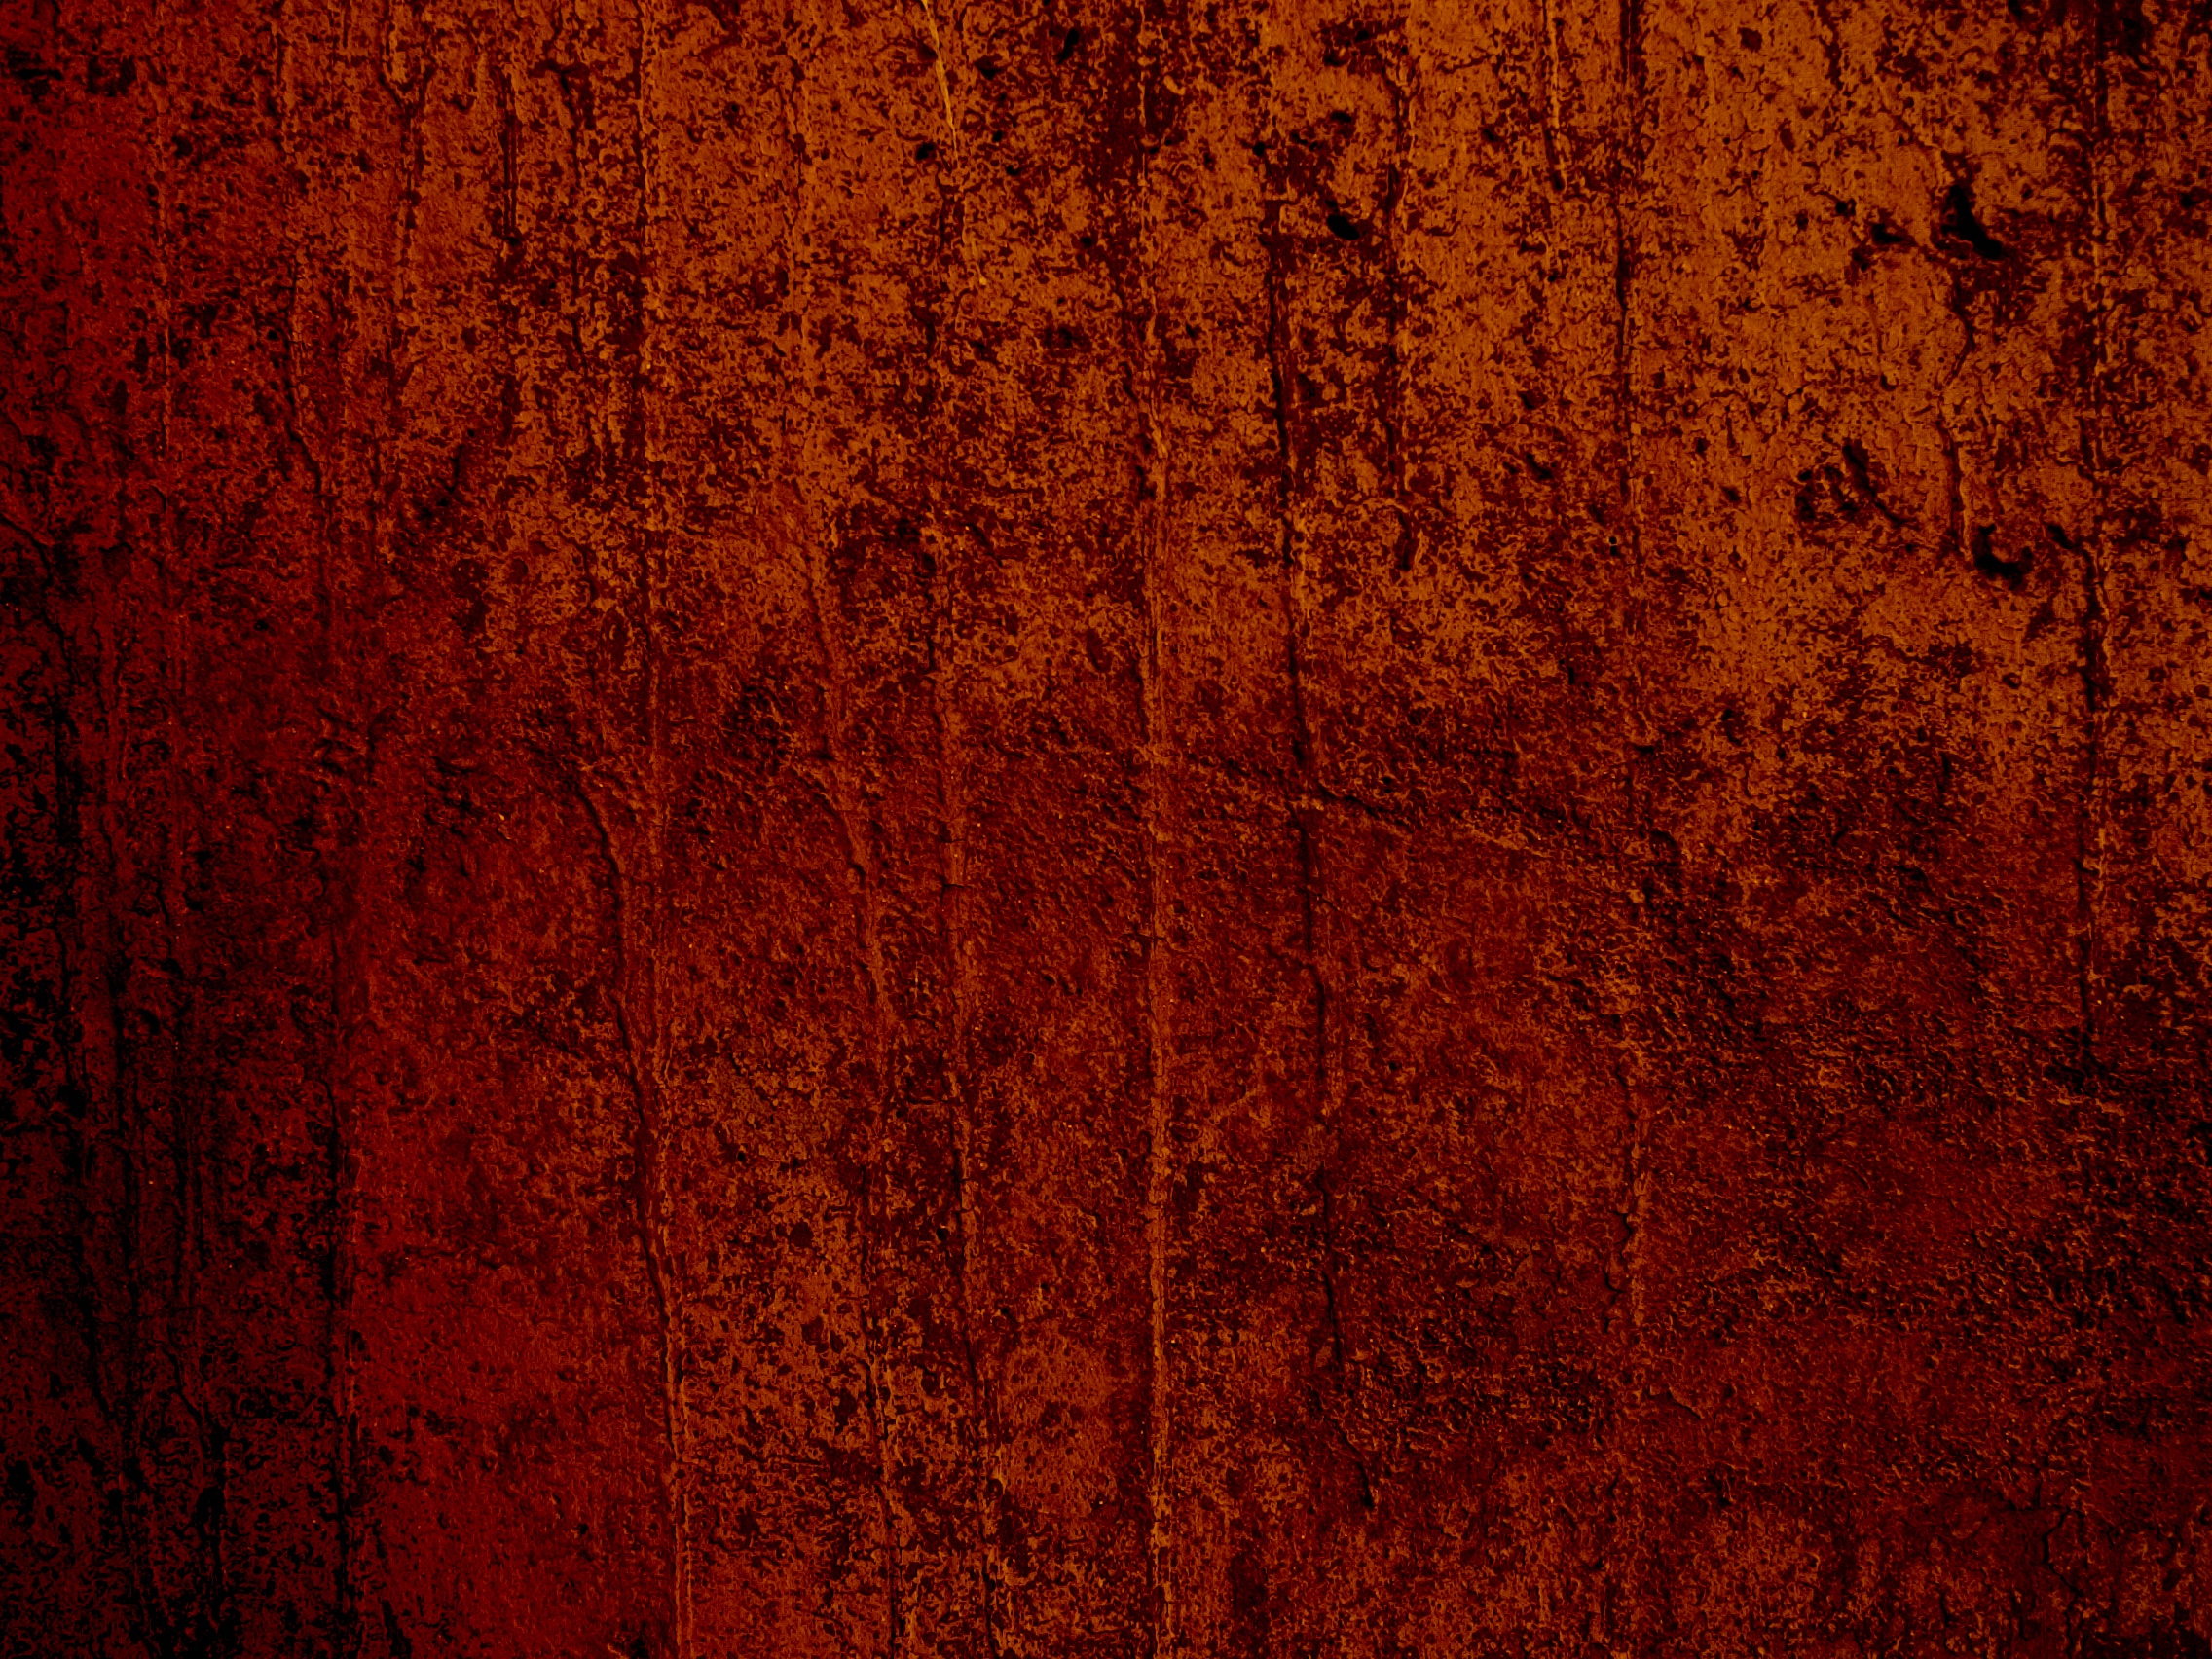 carta da parati strutturata arancione,rosso,arancia,marrone,legna,color legno